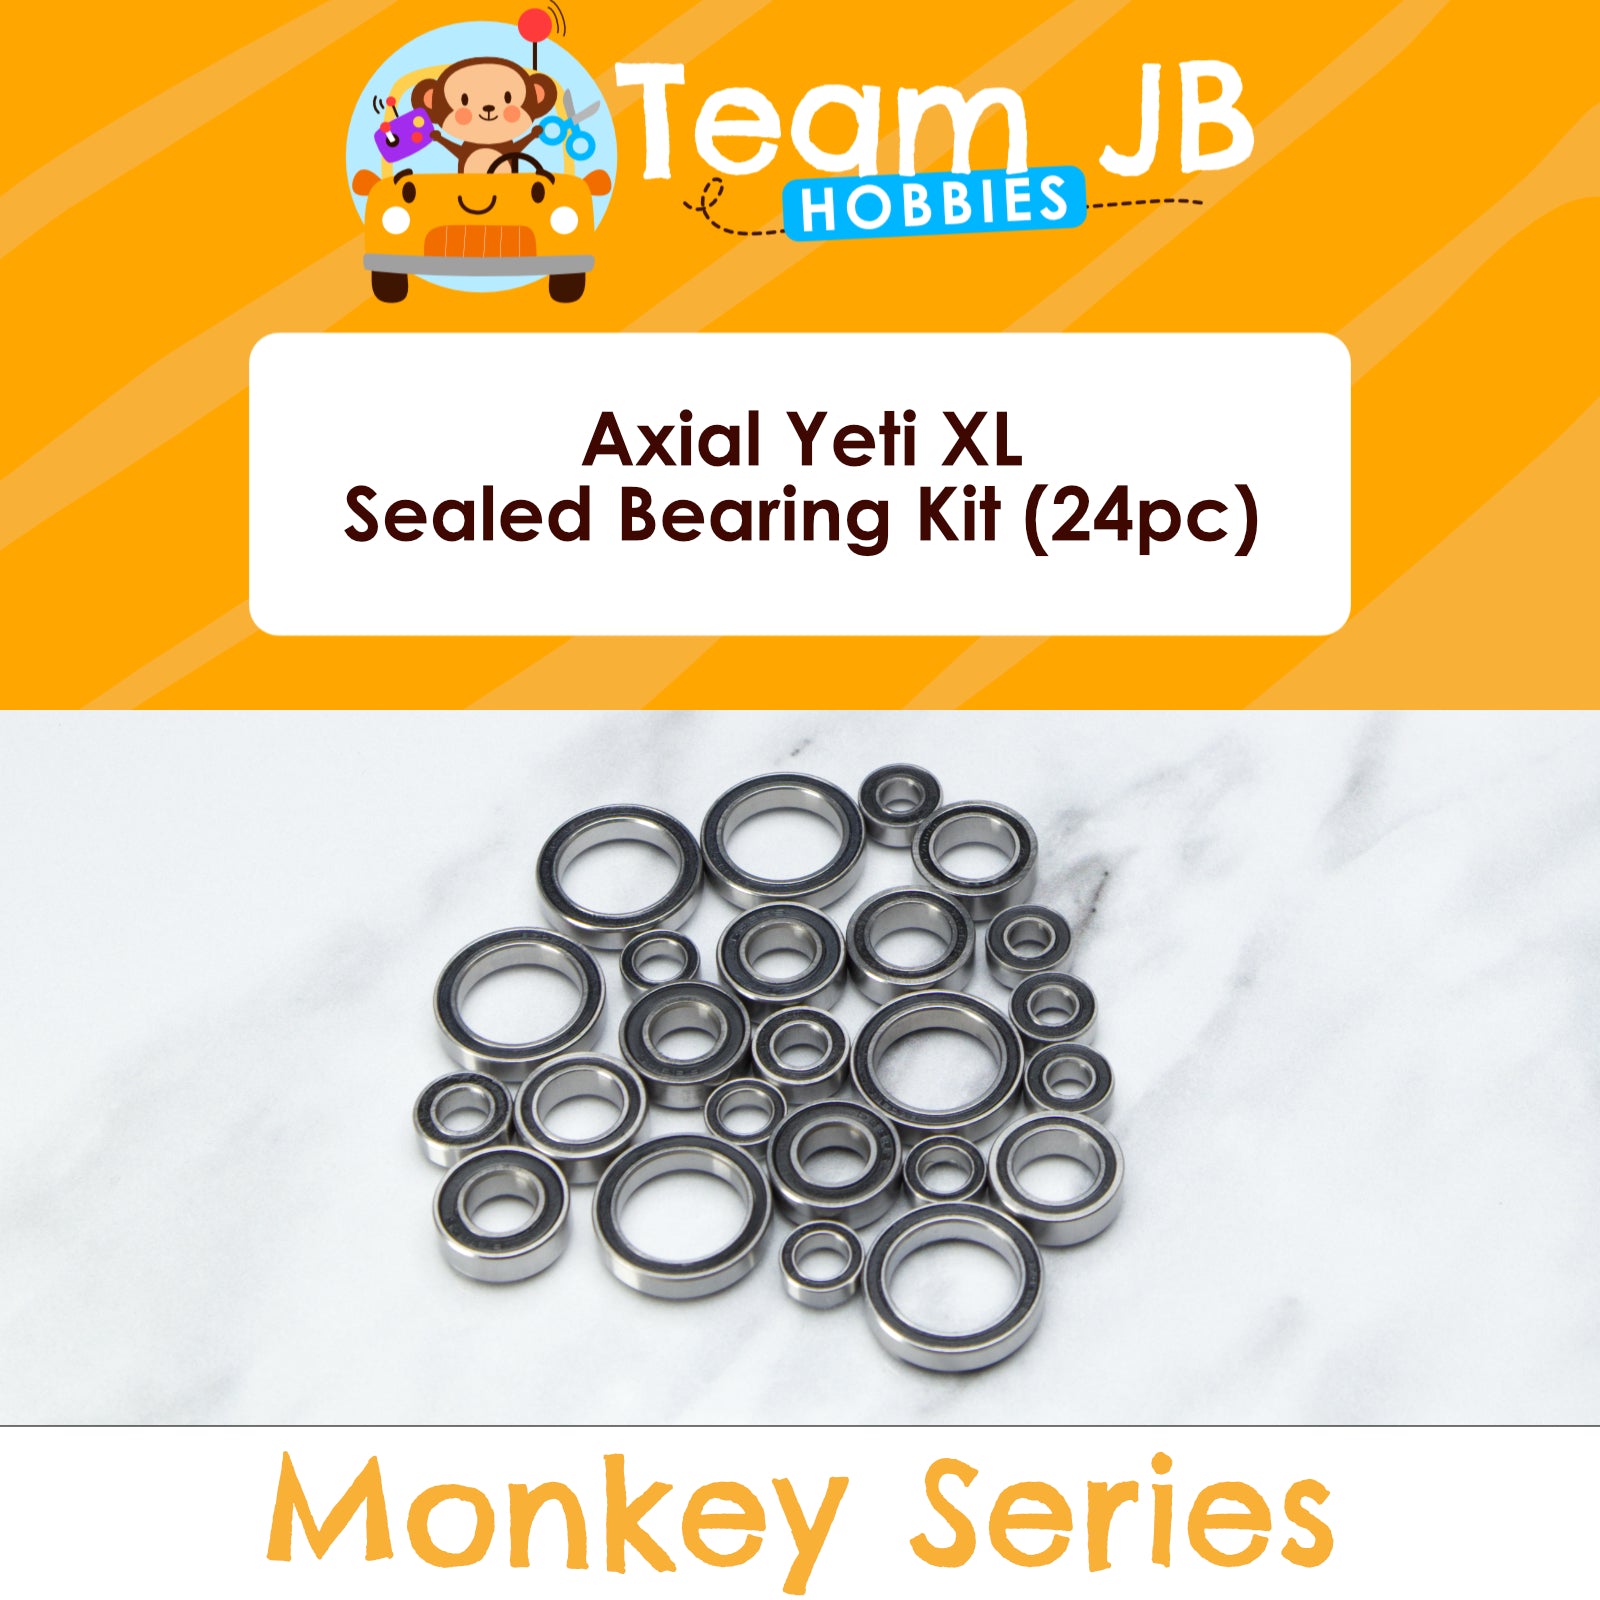 Axial Yeti XL - Sealed Bearing Kit